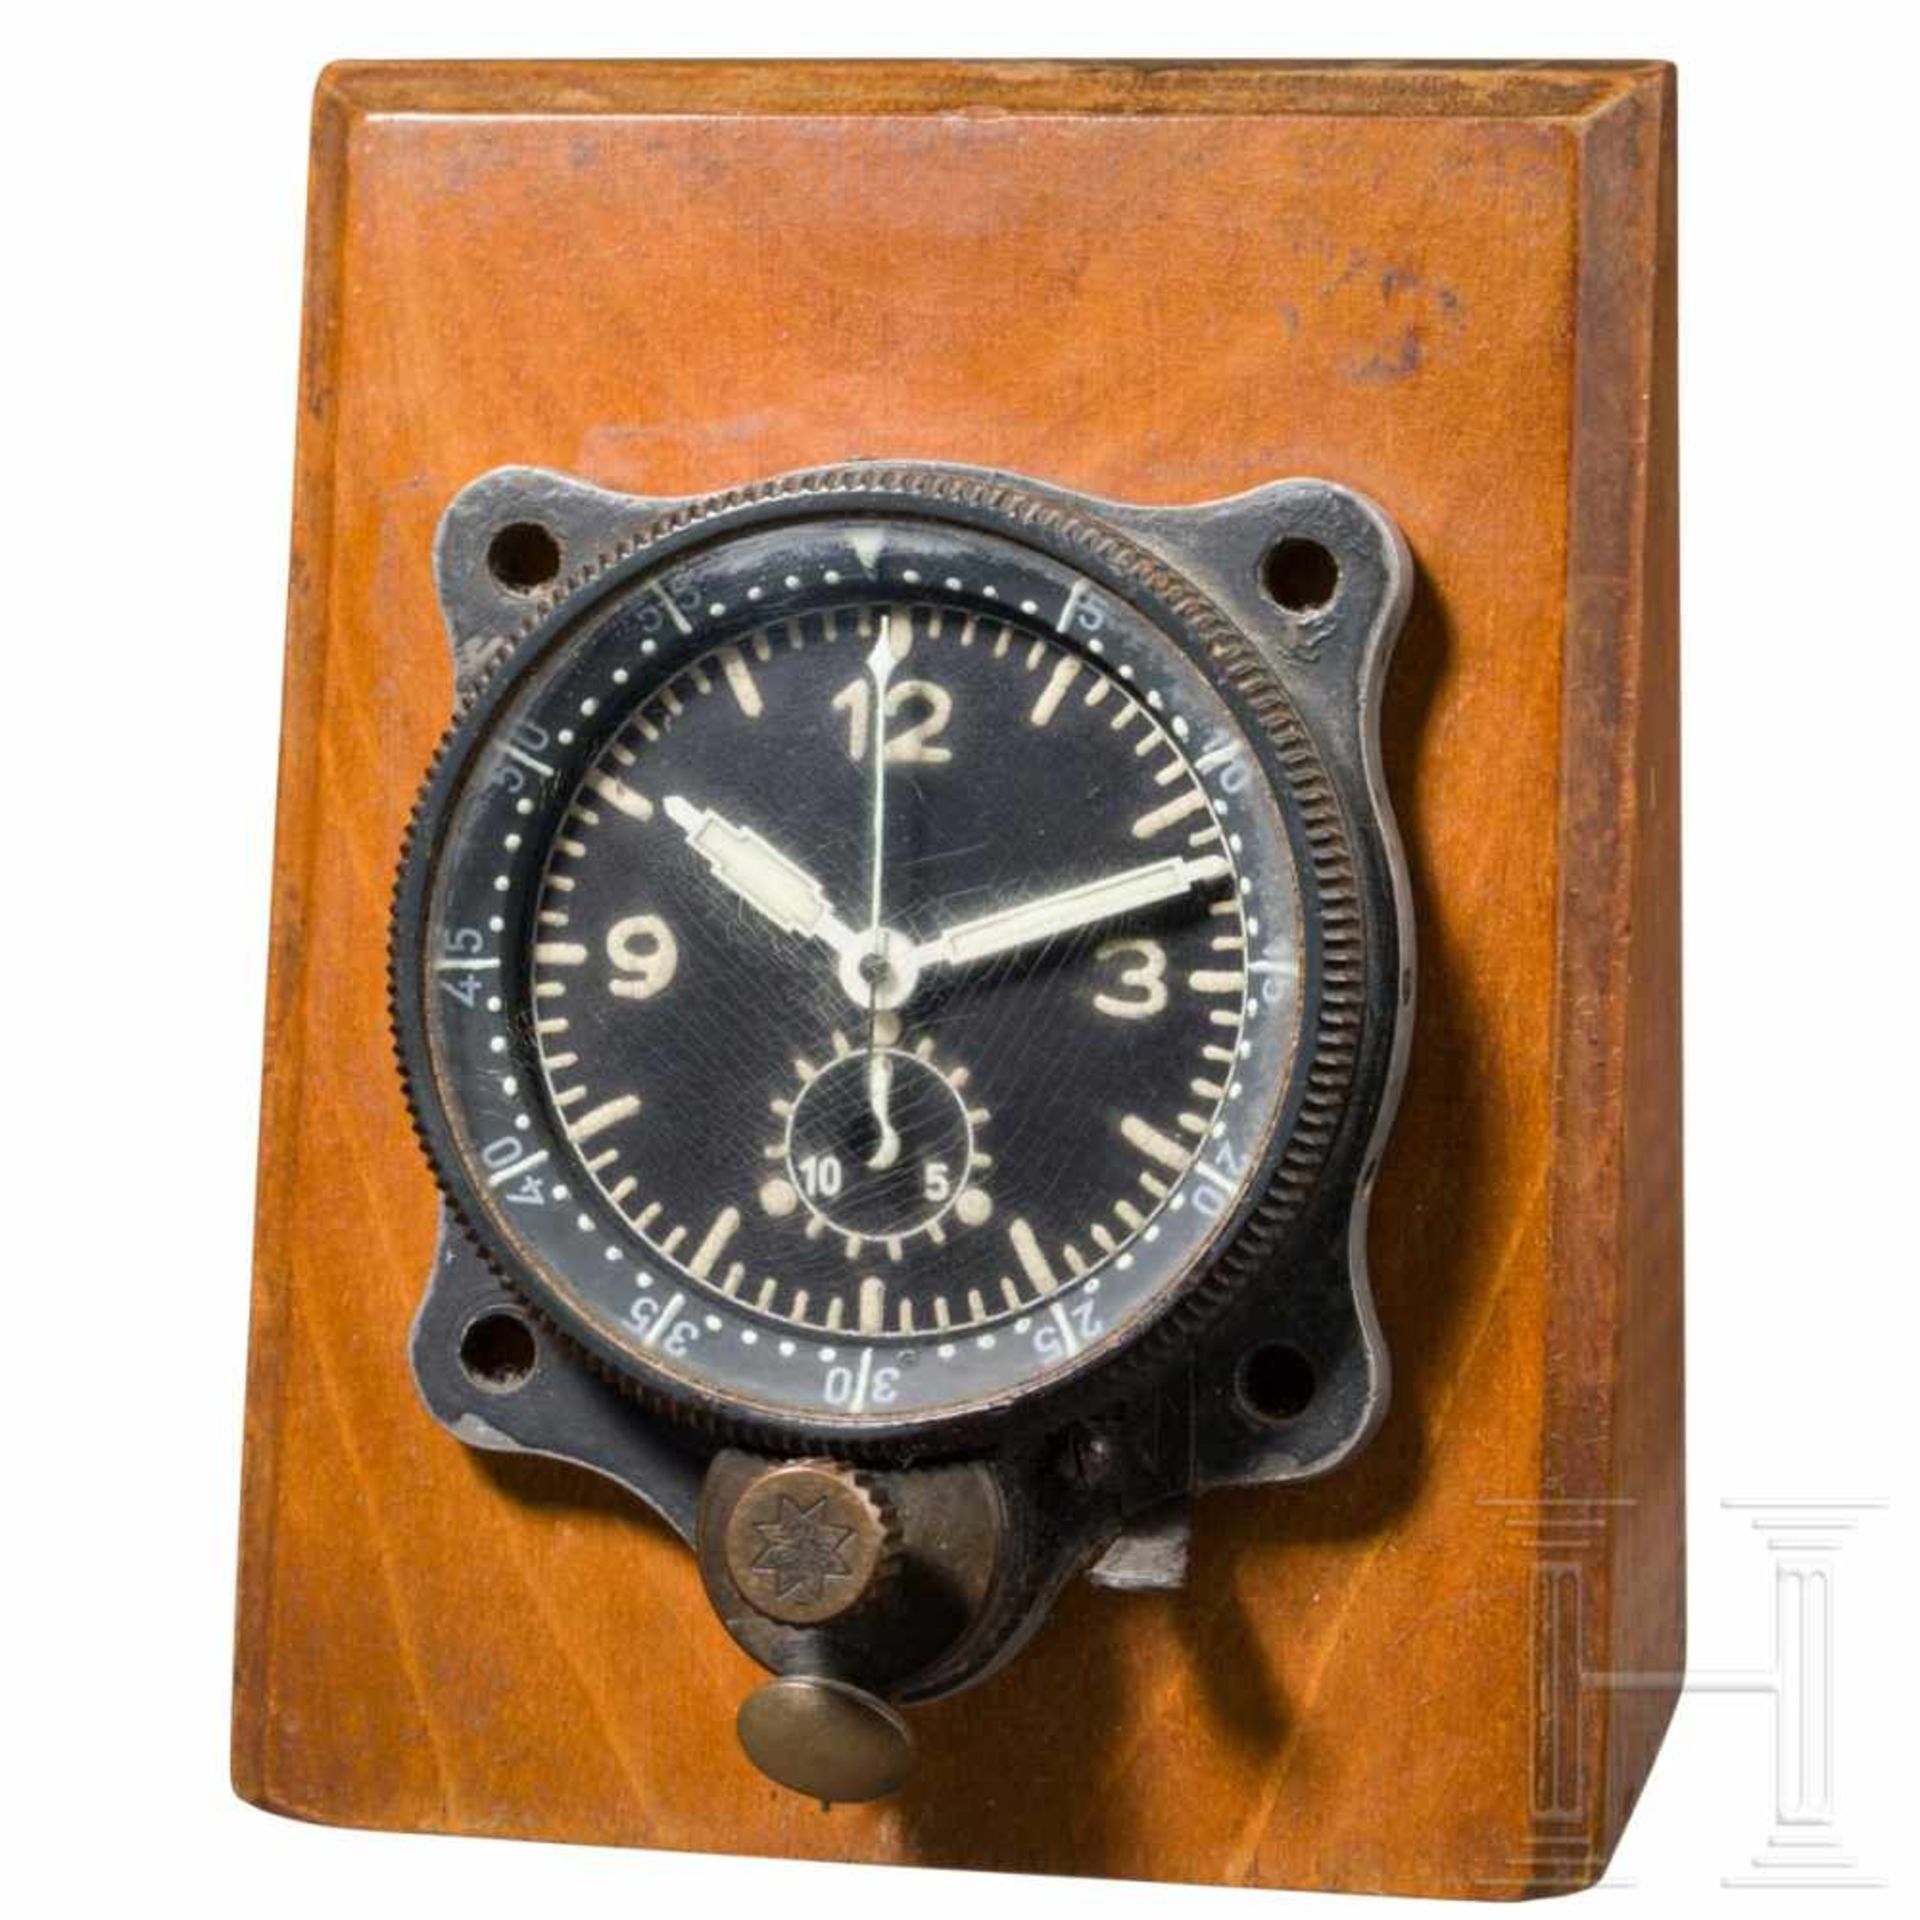 Blindfluguhr Bo-UK 1 mit Chronograph der Deutschen LuftwaffeGehäuse mit originaler Lackierung,